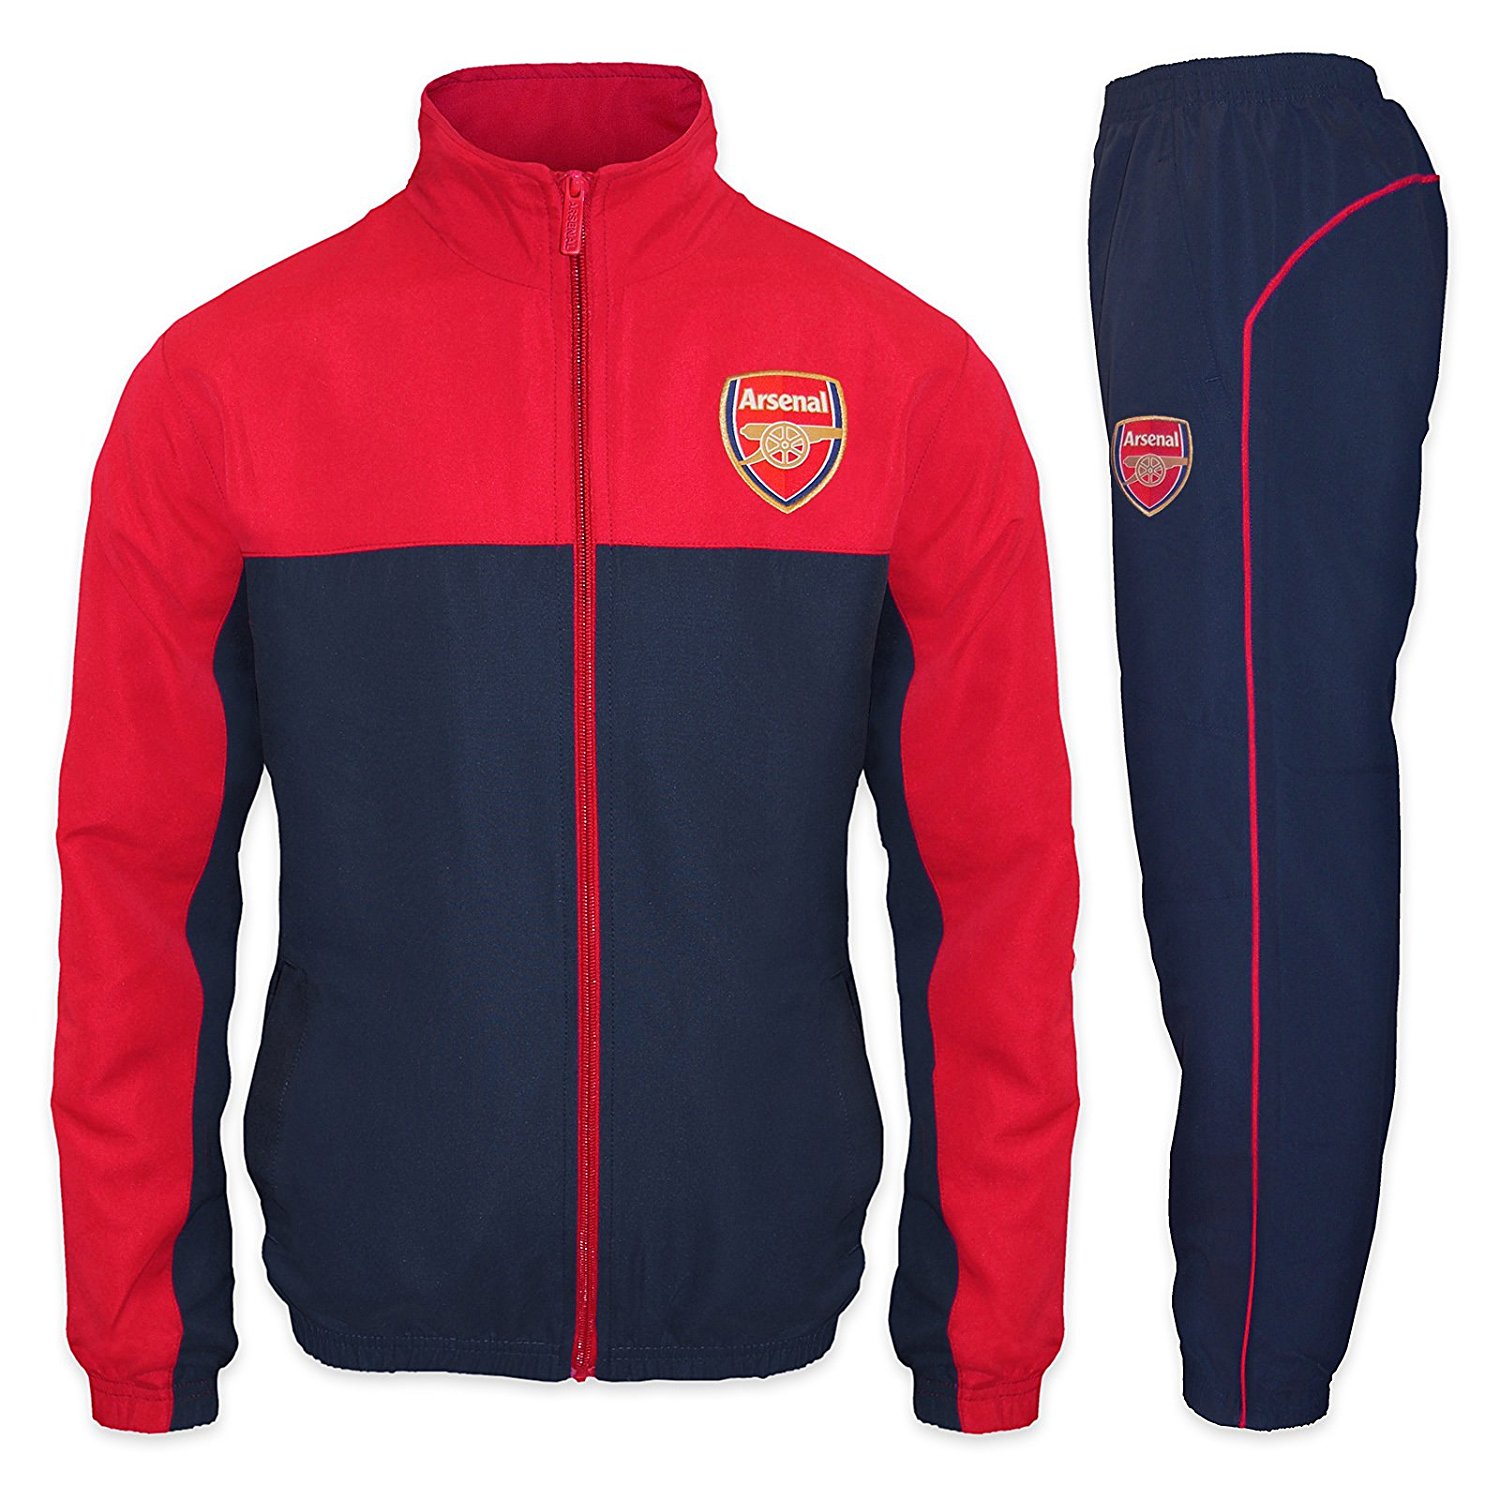 track suit arsenal football club official soccer gift mens jacket u0026 pants tracksuit set VNWYBDR